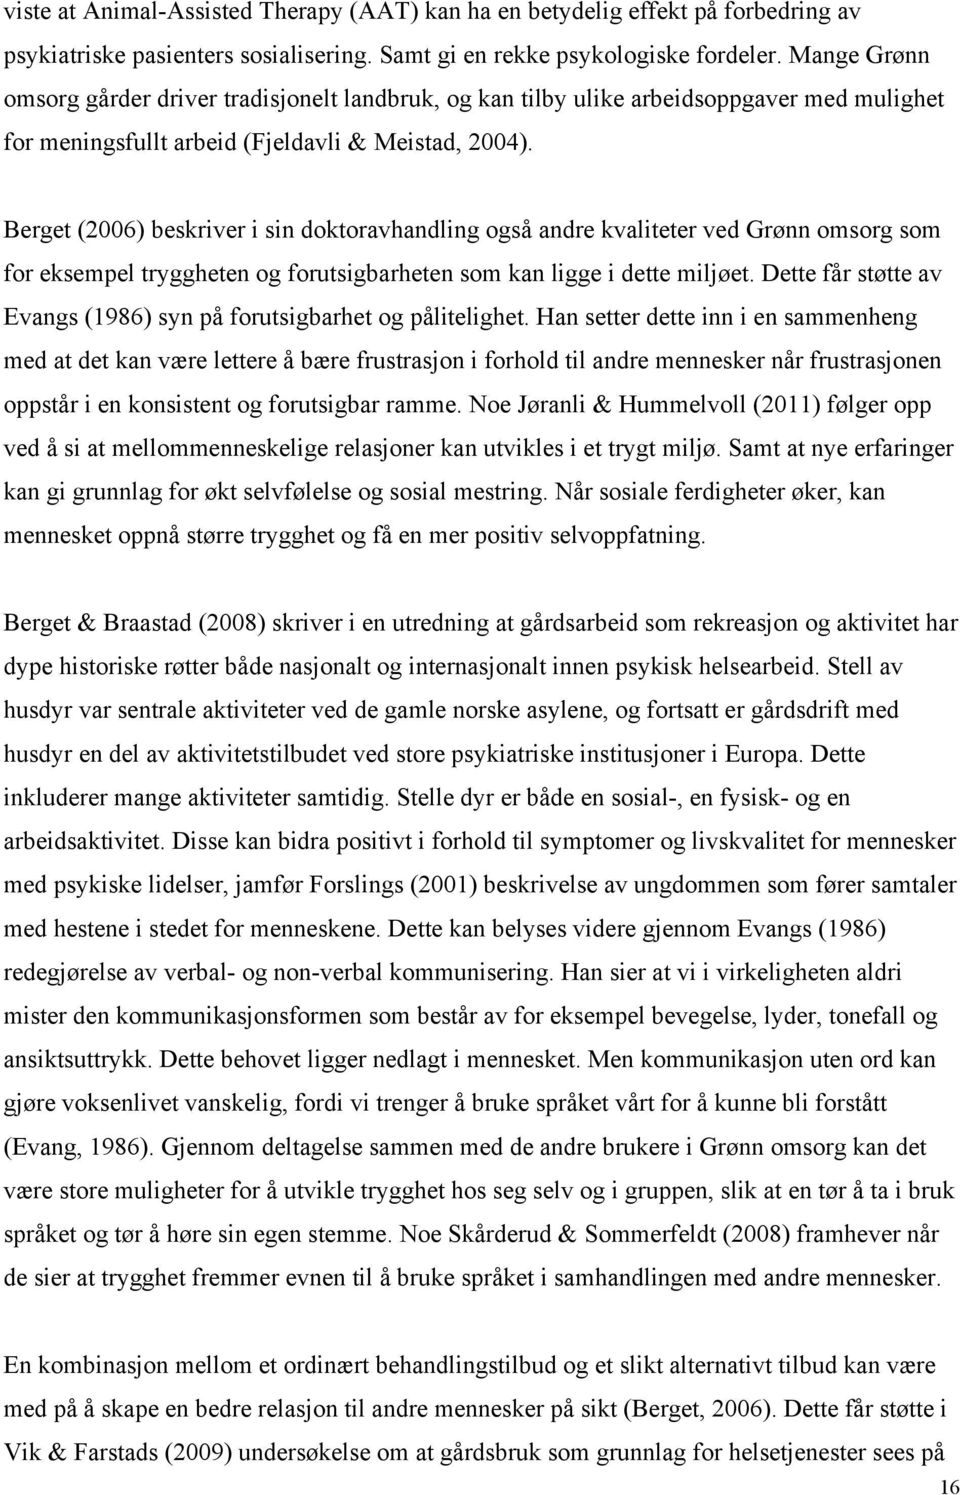 Berget (2006) beskriver i sin doktoravhandling også andre kvaliteter ved Grønn omsorg som for eksempel tryggheten og forutsigbarheten som kan ligge i dette miljøet.